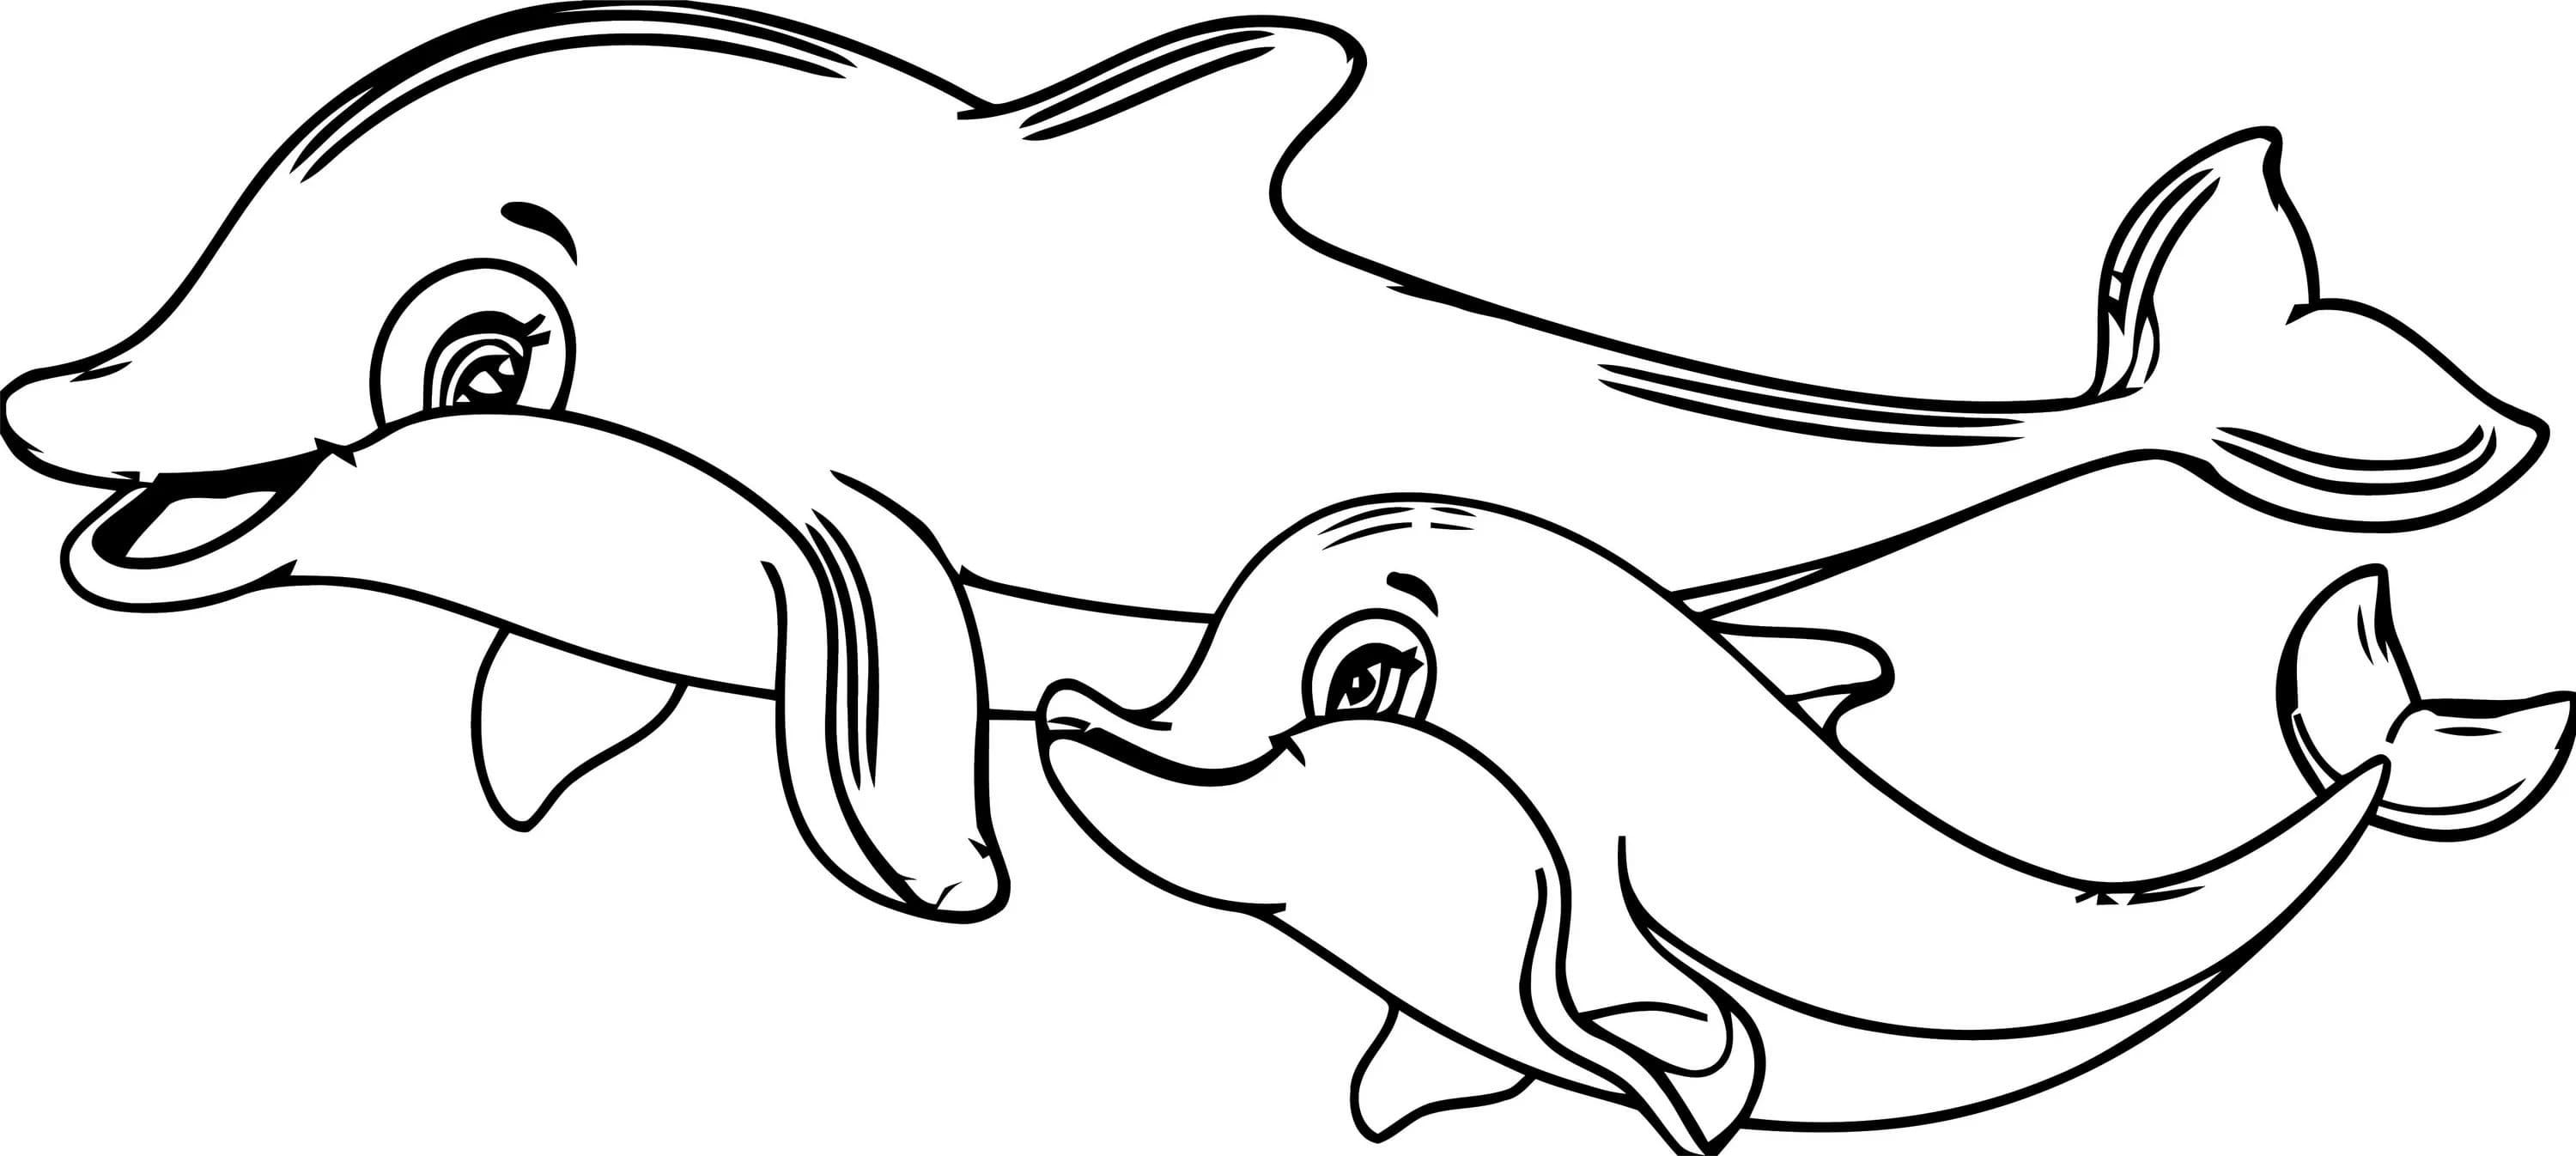 Delfin Ausmalbild. 7 Malvorlagen Kostenlos zum Ausdrucken